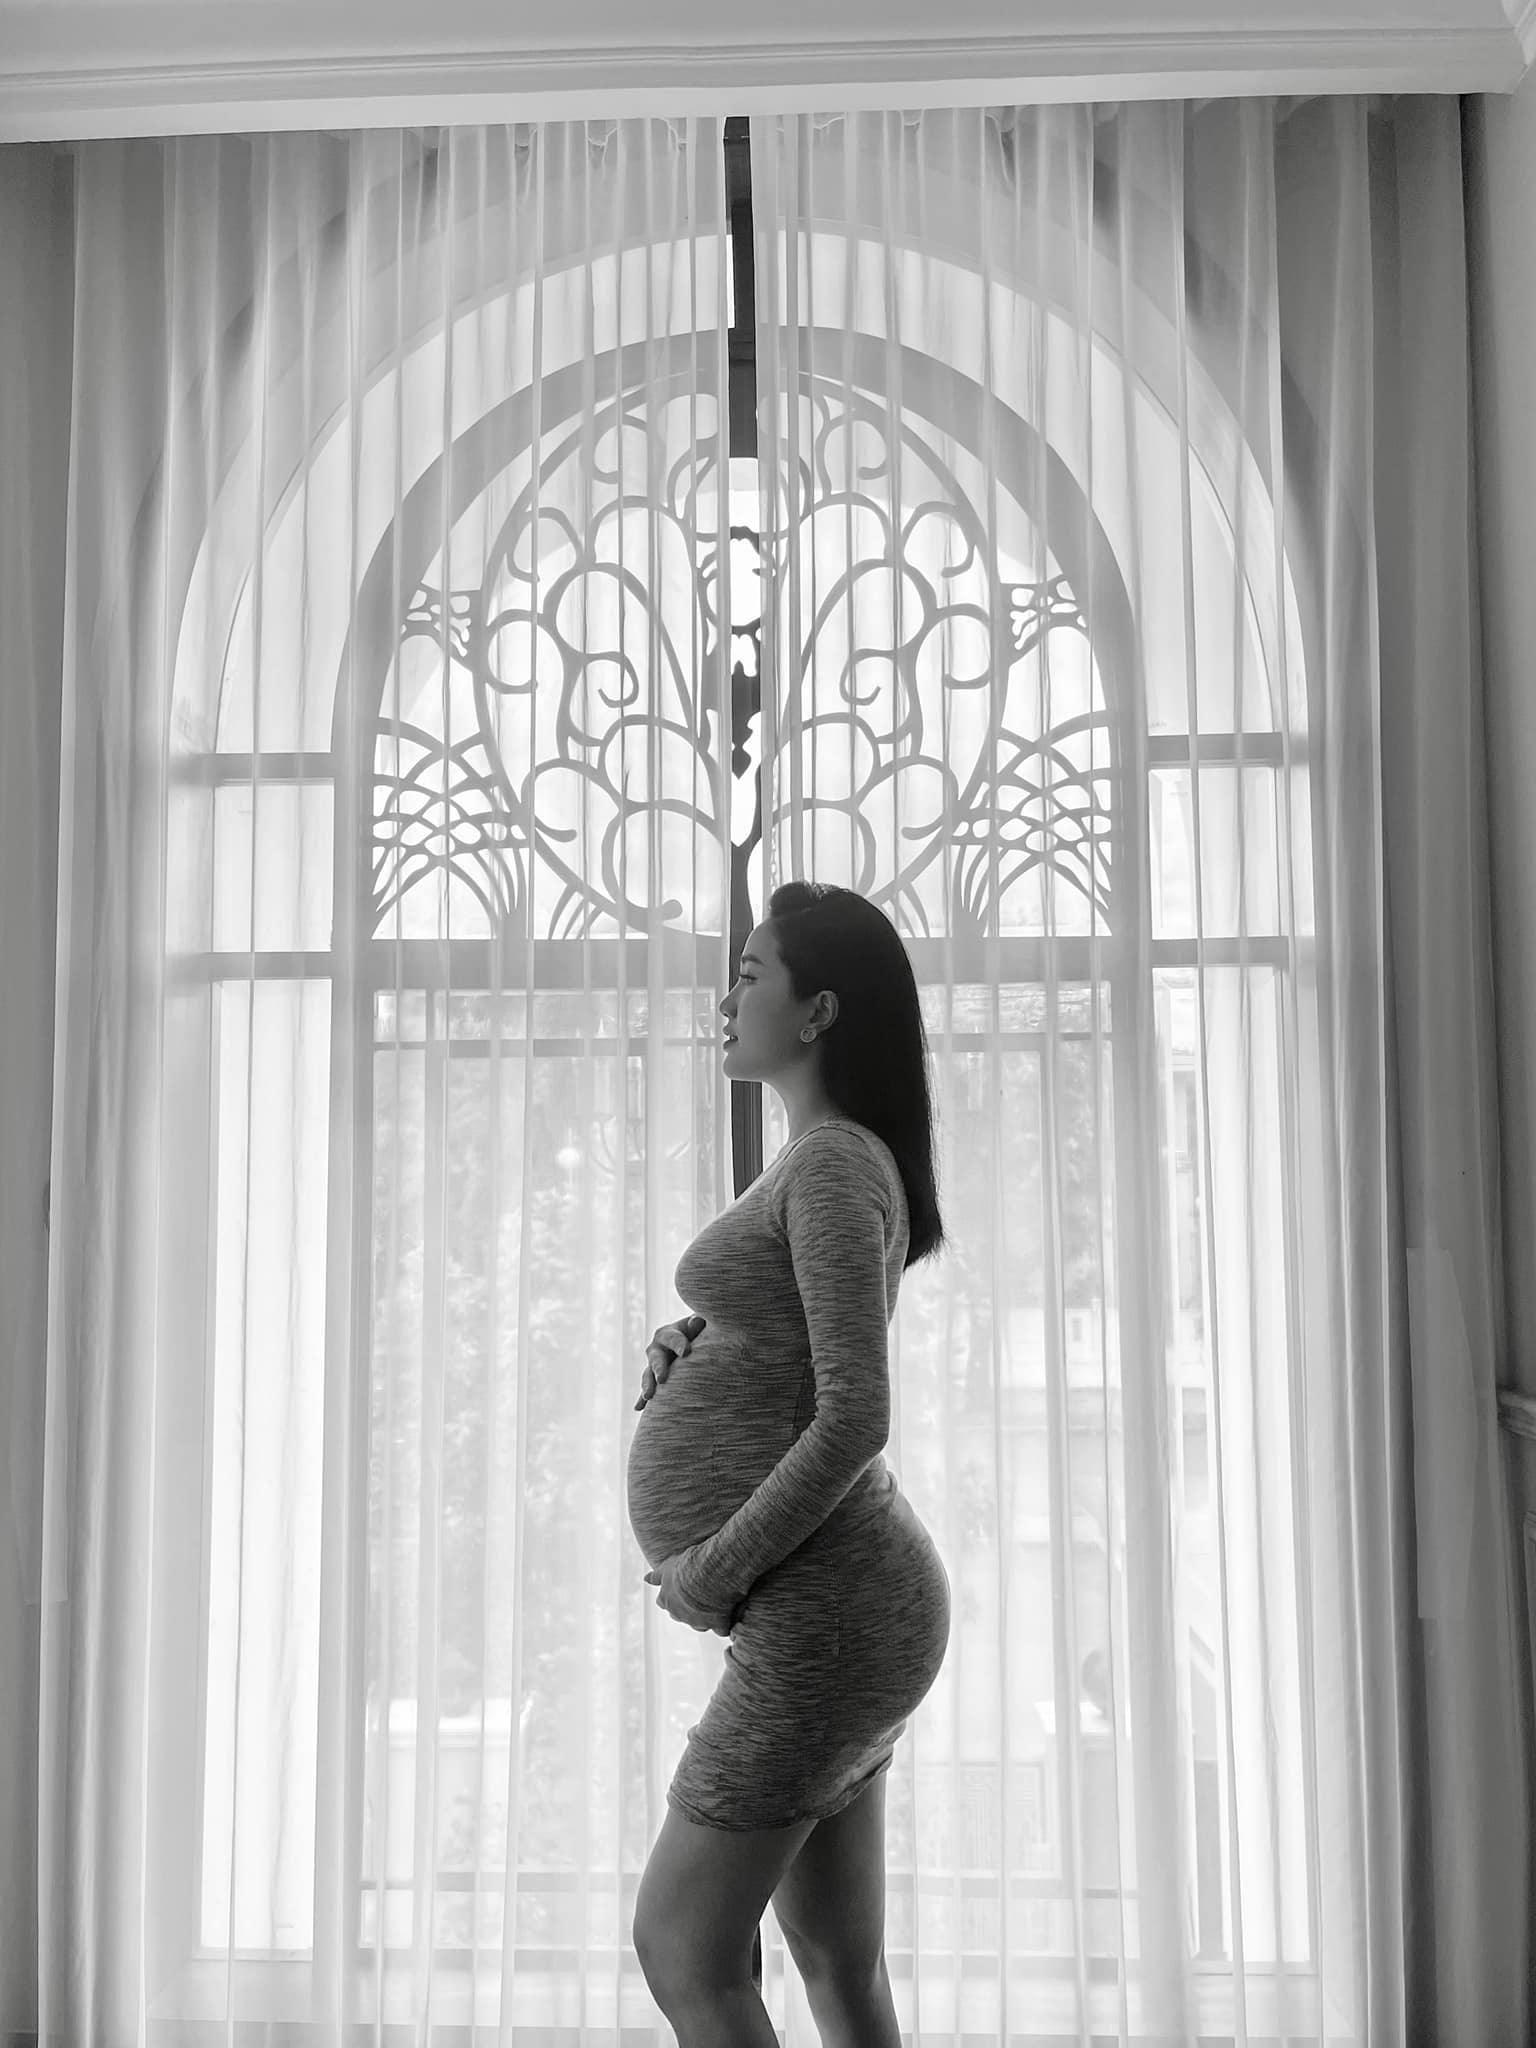 Ca sĩ Bảo Thy tung loạt ảnh ở tuần 36 thai kì, nhan sắc mẹ bầu rạng rỡ không tì vết - ảnh 1